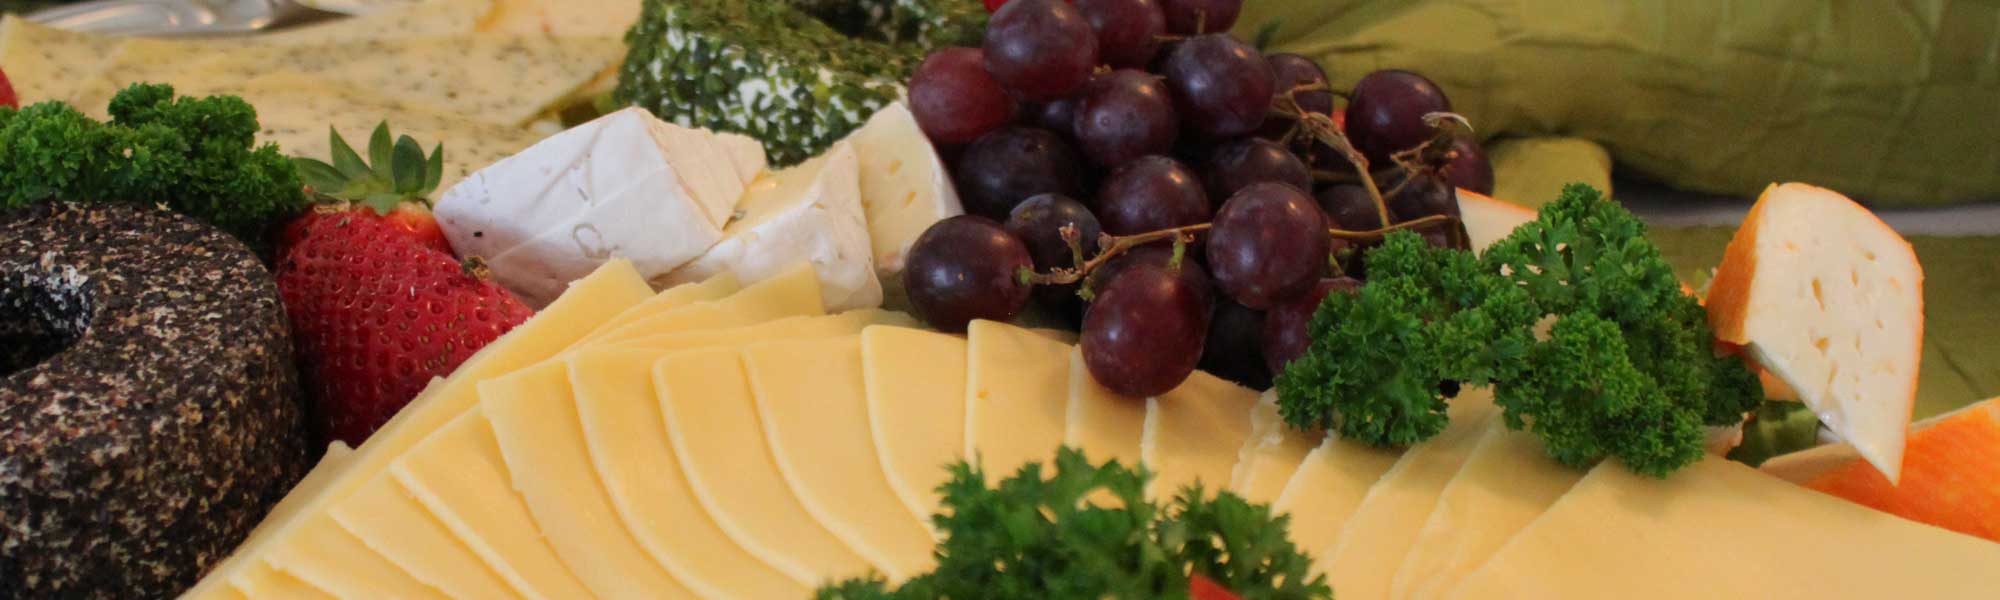 Platte mit Schnittkäse, Camembert und Weintrauben